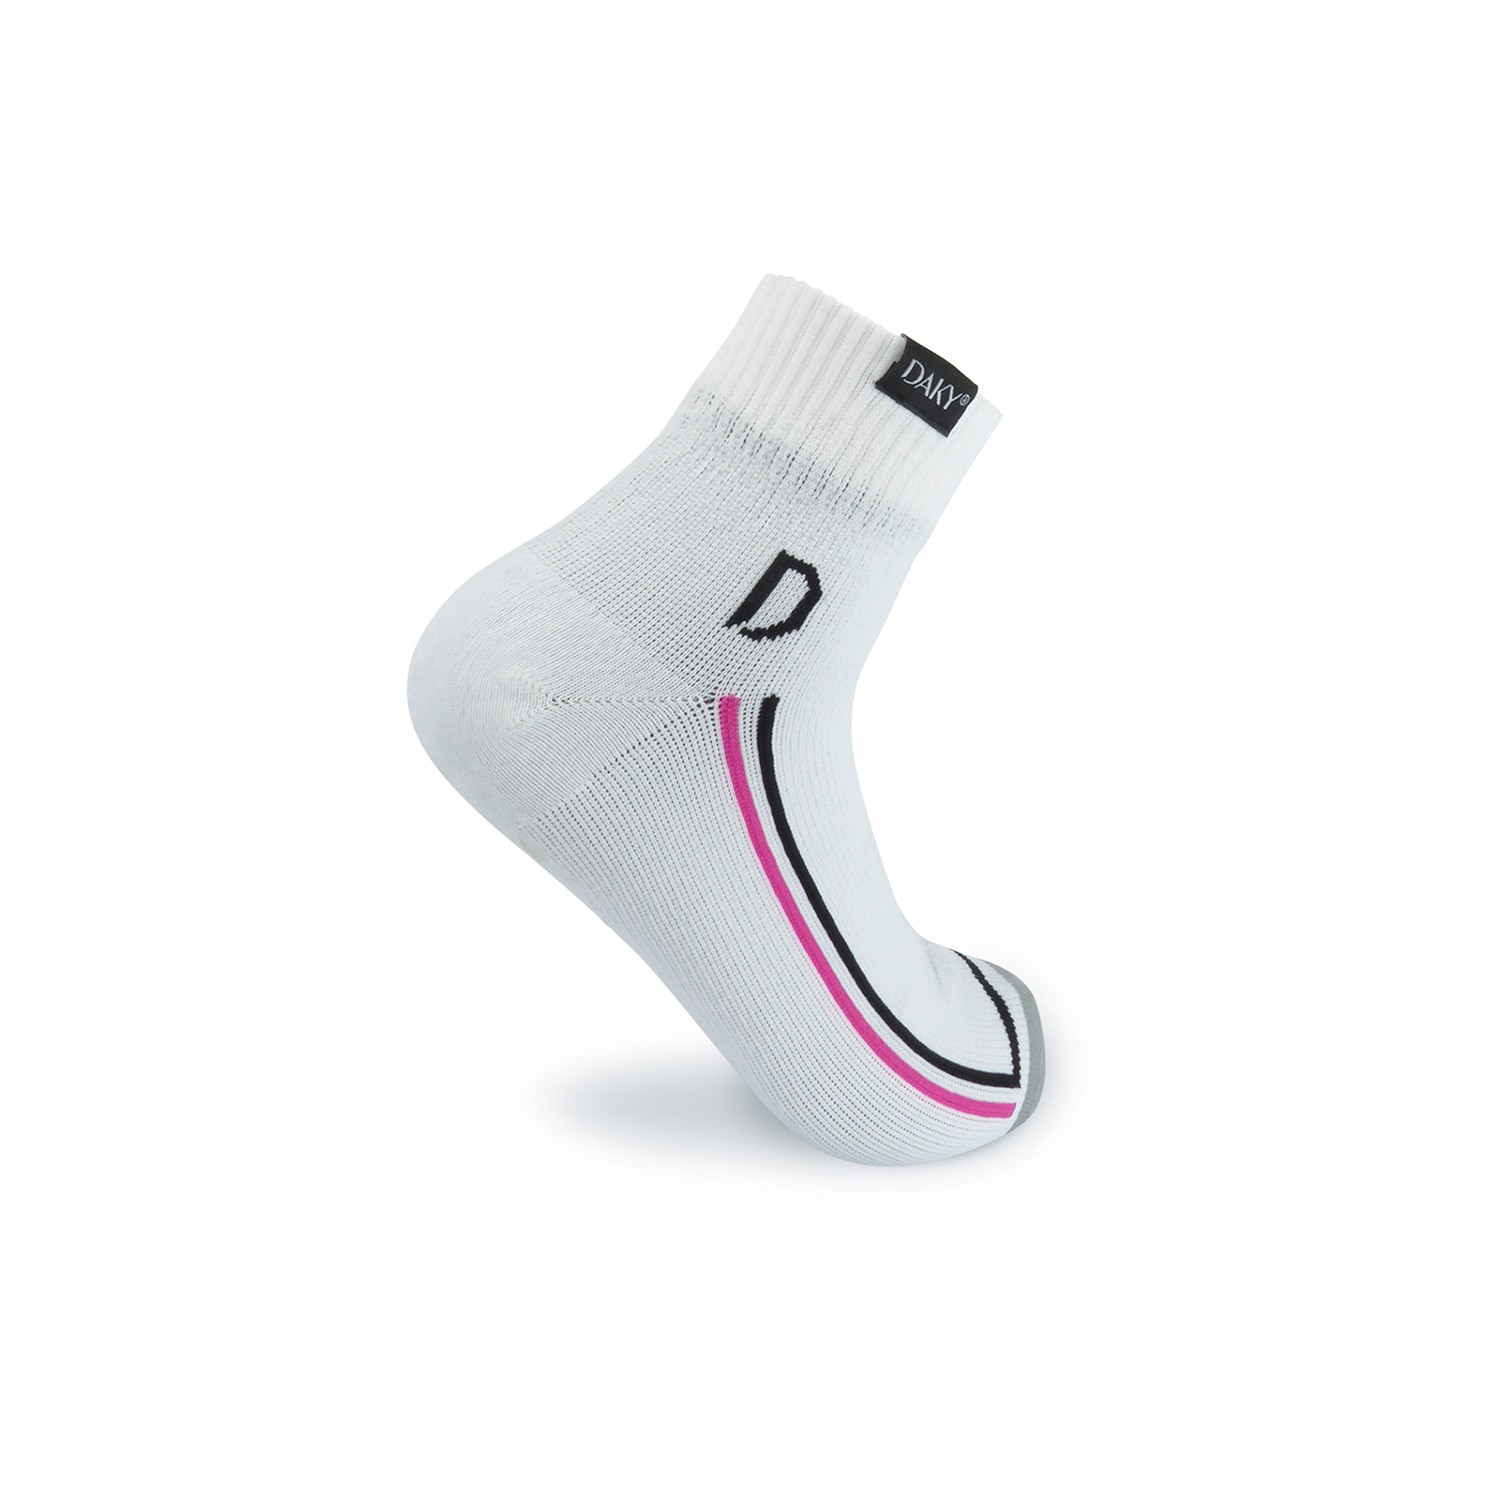 DAKY (SKYLINE R) – Wudu (Masah) Compliant & Waterproof Socks